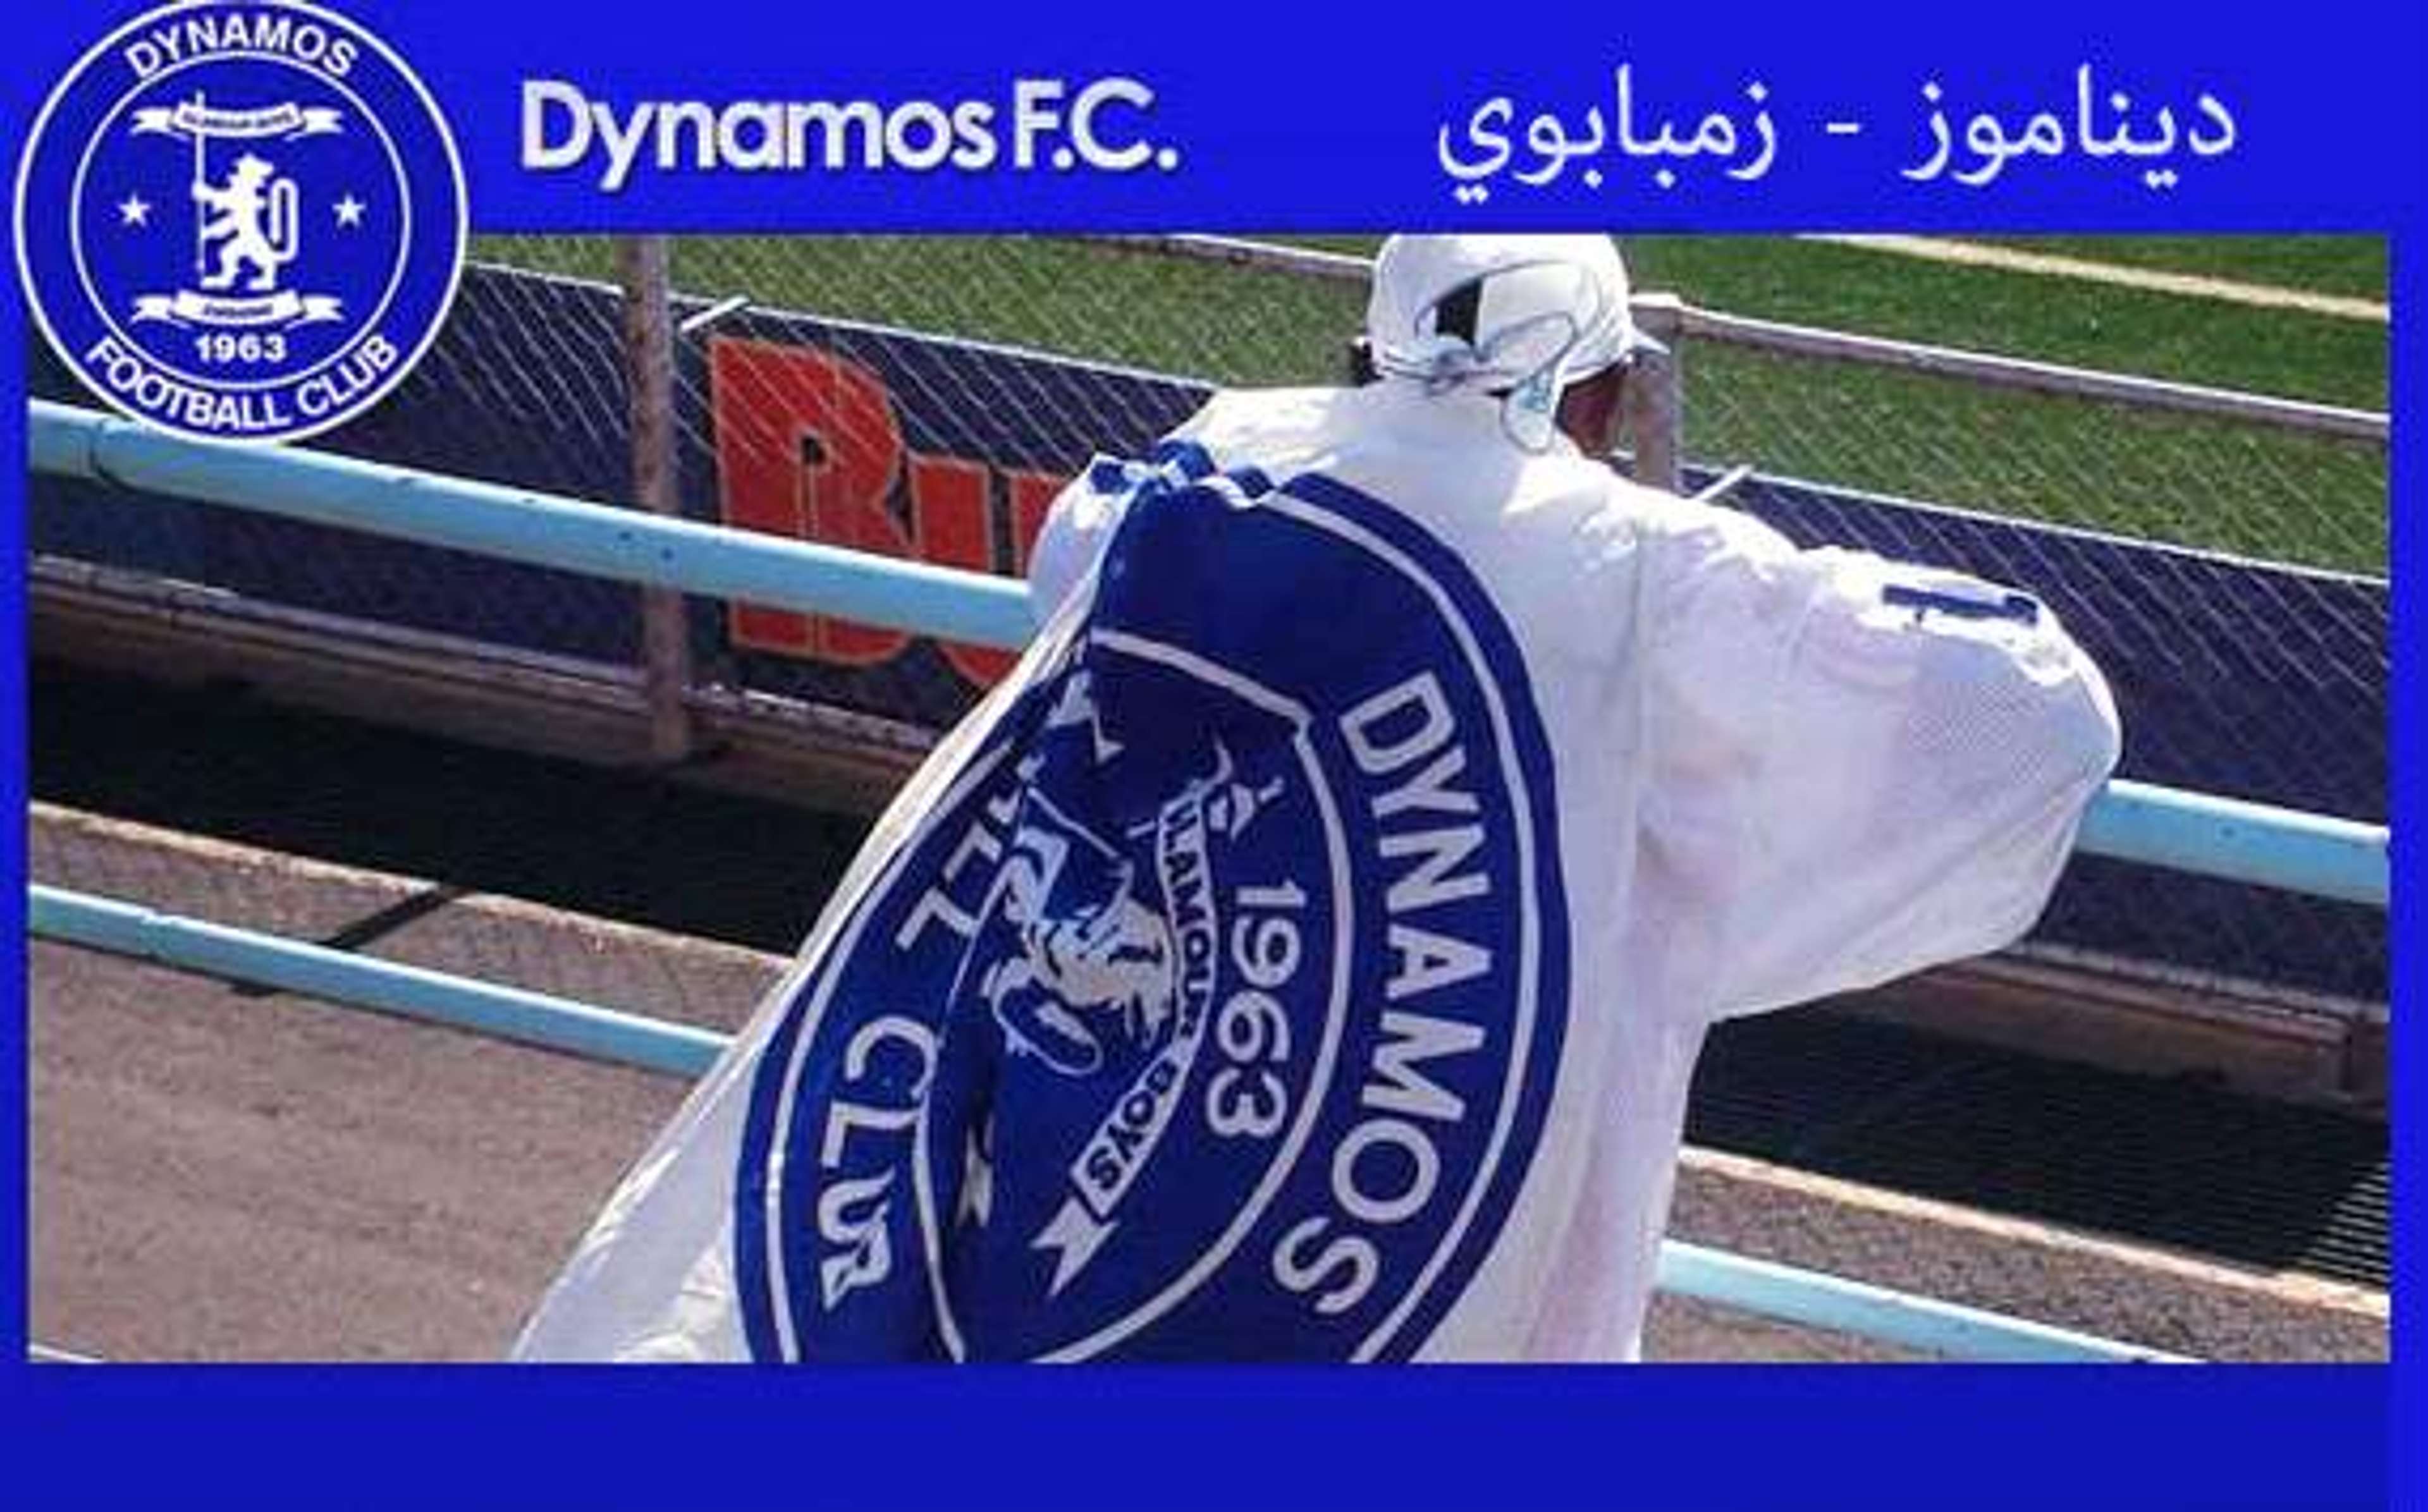 Dynamos Zimbabwe